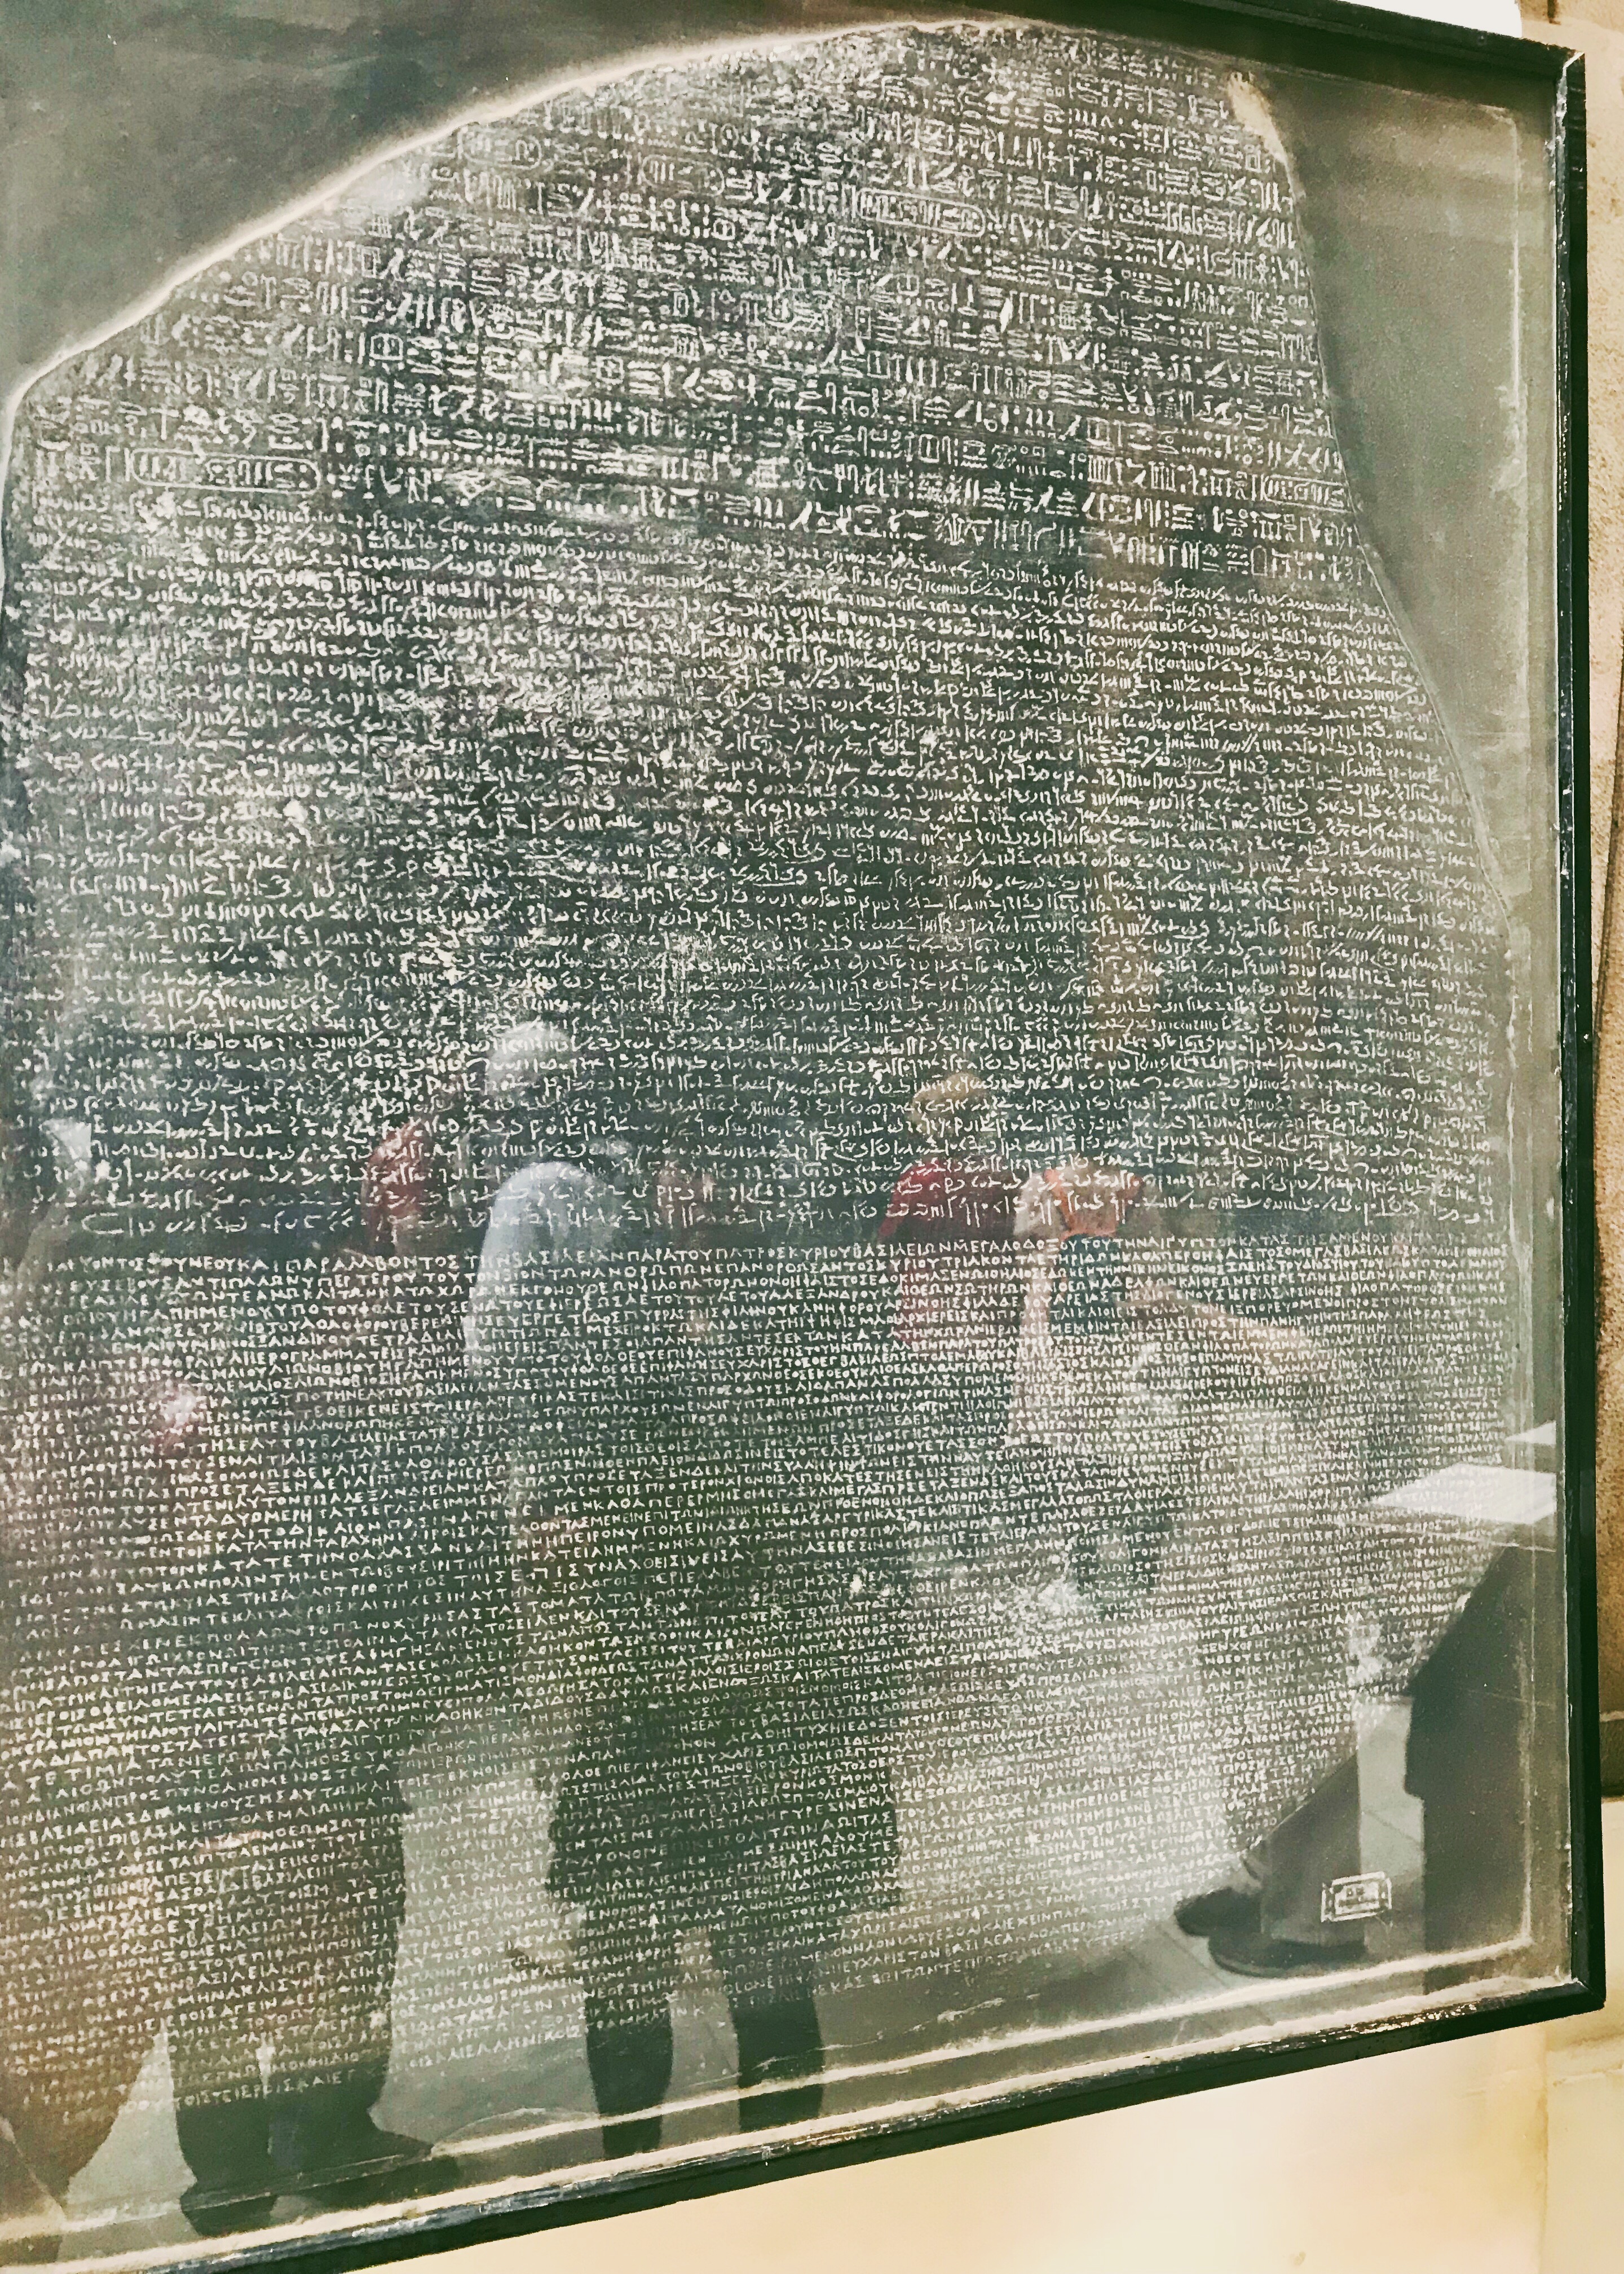 Replica of the Rosetta Stone